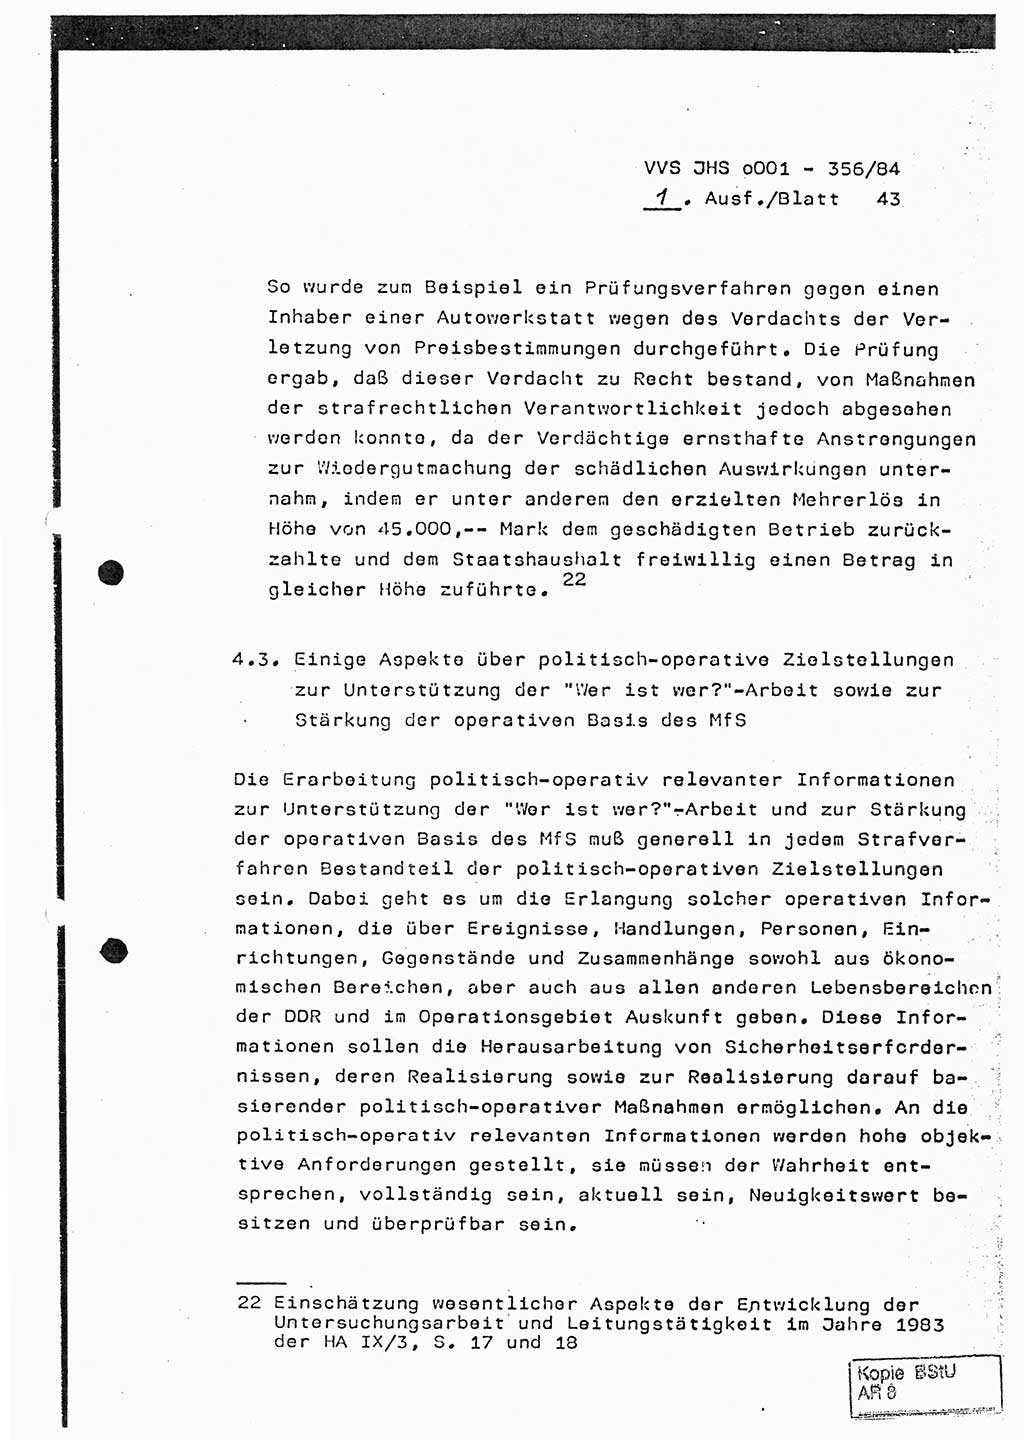 Diplomarbeit, Major Lutz Rahaus (HA Ⅸ/3), Ministerium für Staatssicherheit (MfS) [Deutsche Demokratische Republik (DDR)], Juristische Hochschule (JHS), Vertrauliche Verschlußsache (VVS) o001-356/84, Potsdam 1984, Seite 43 (Dipl.-Arb. MfS DDR JHS VVS o001-356/84 1984, S. 43)